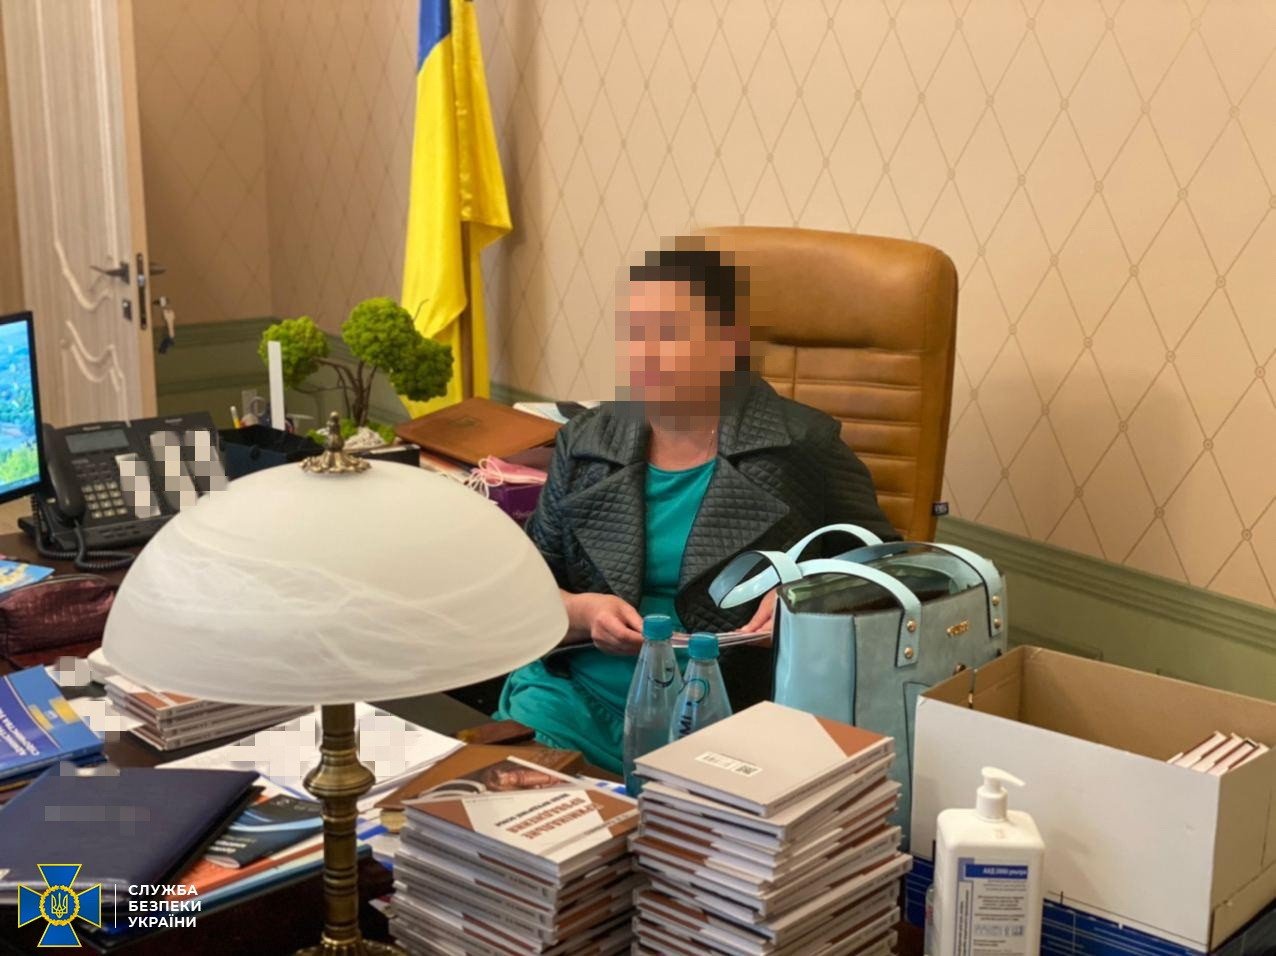 Голова Харківського окружного адмінсуду “погоріла” на хабарі (фото)